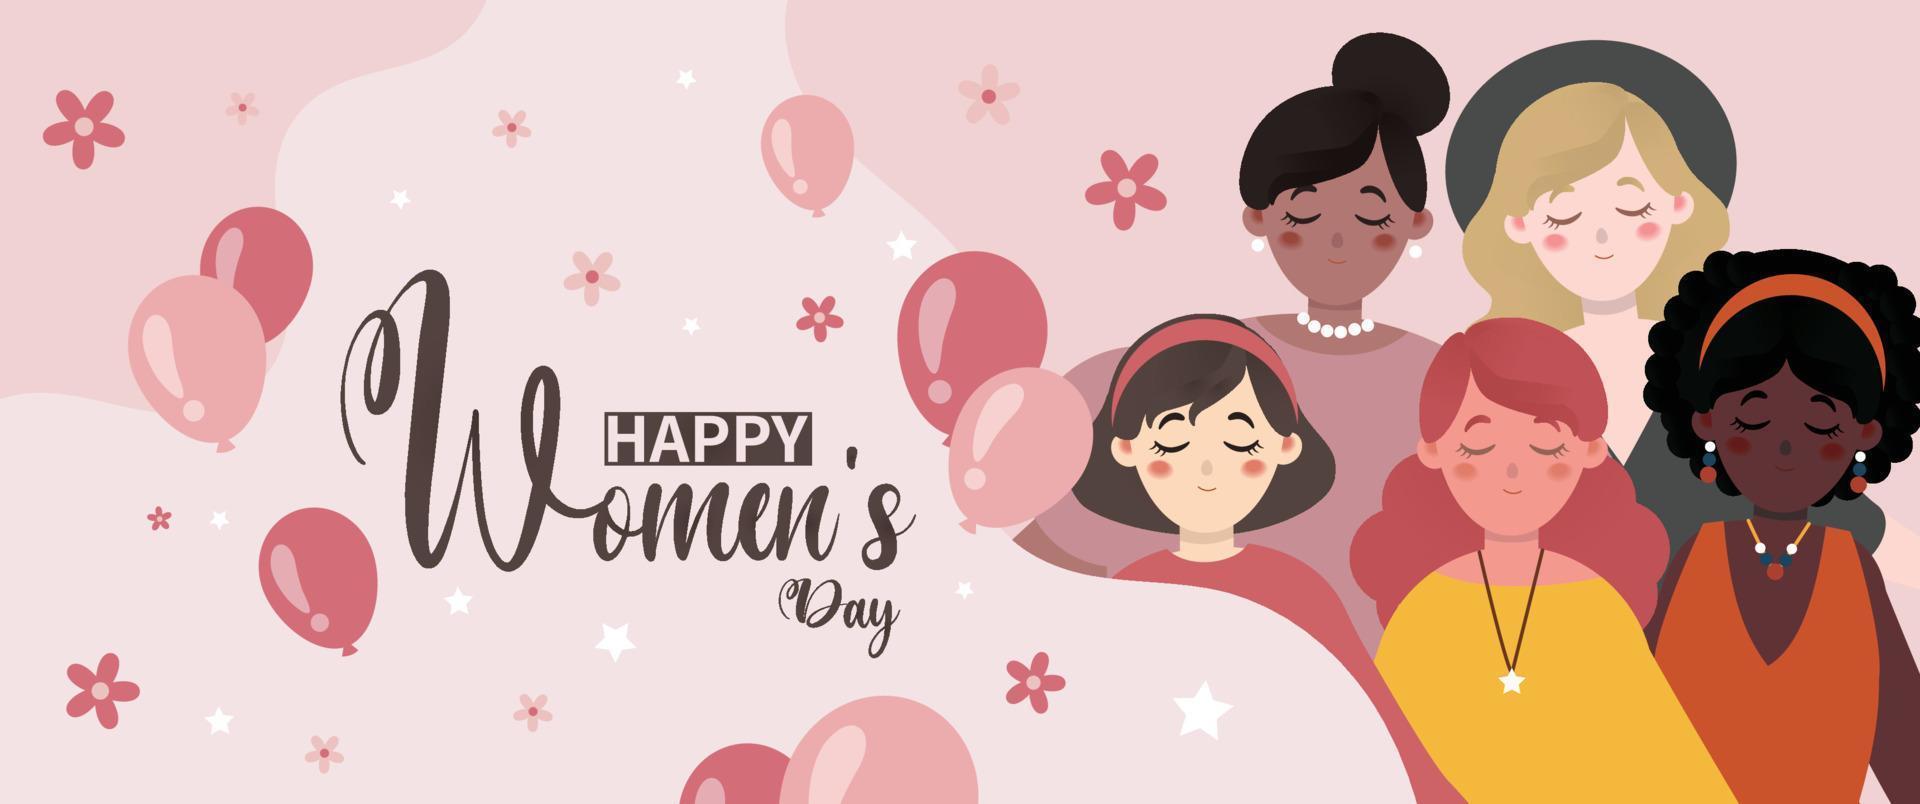 cartel del día internacional de la mujer con mujeres con rostros diferentes vector